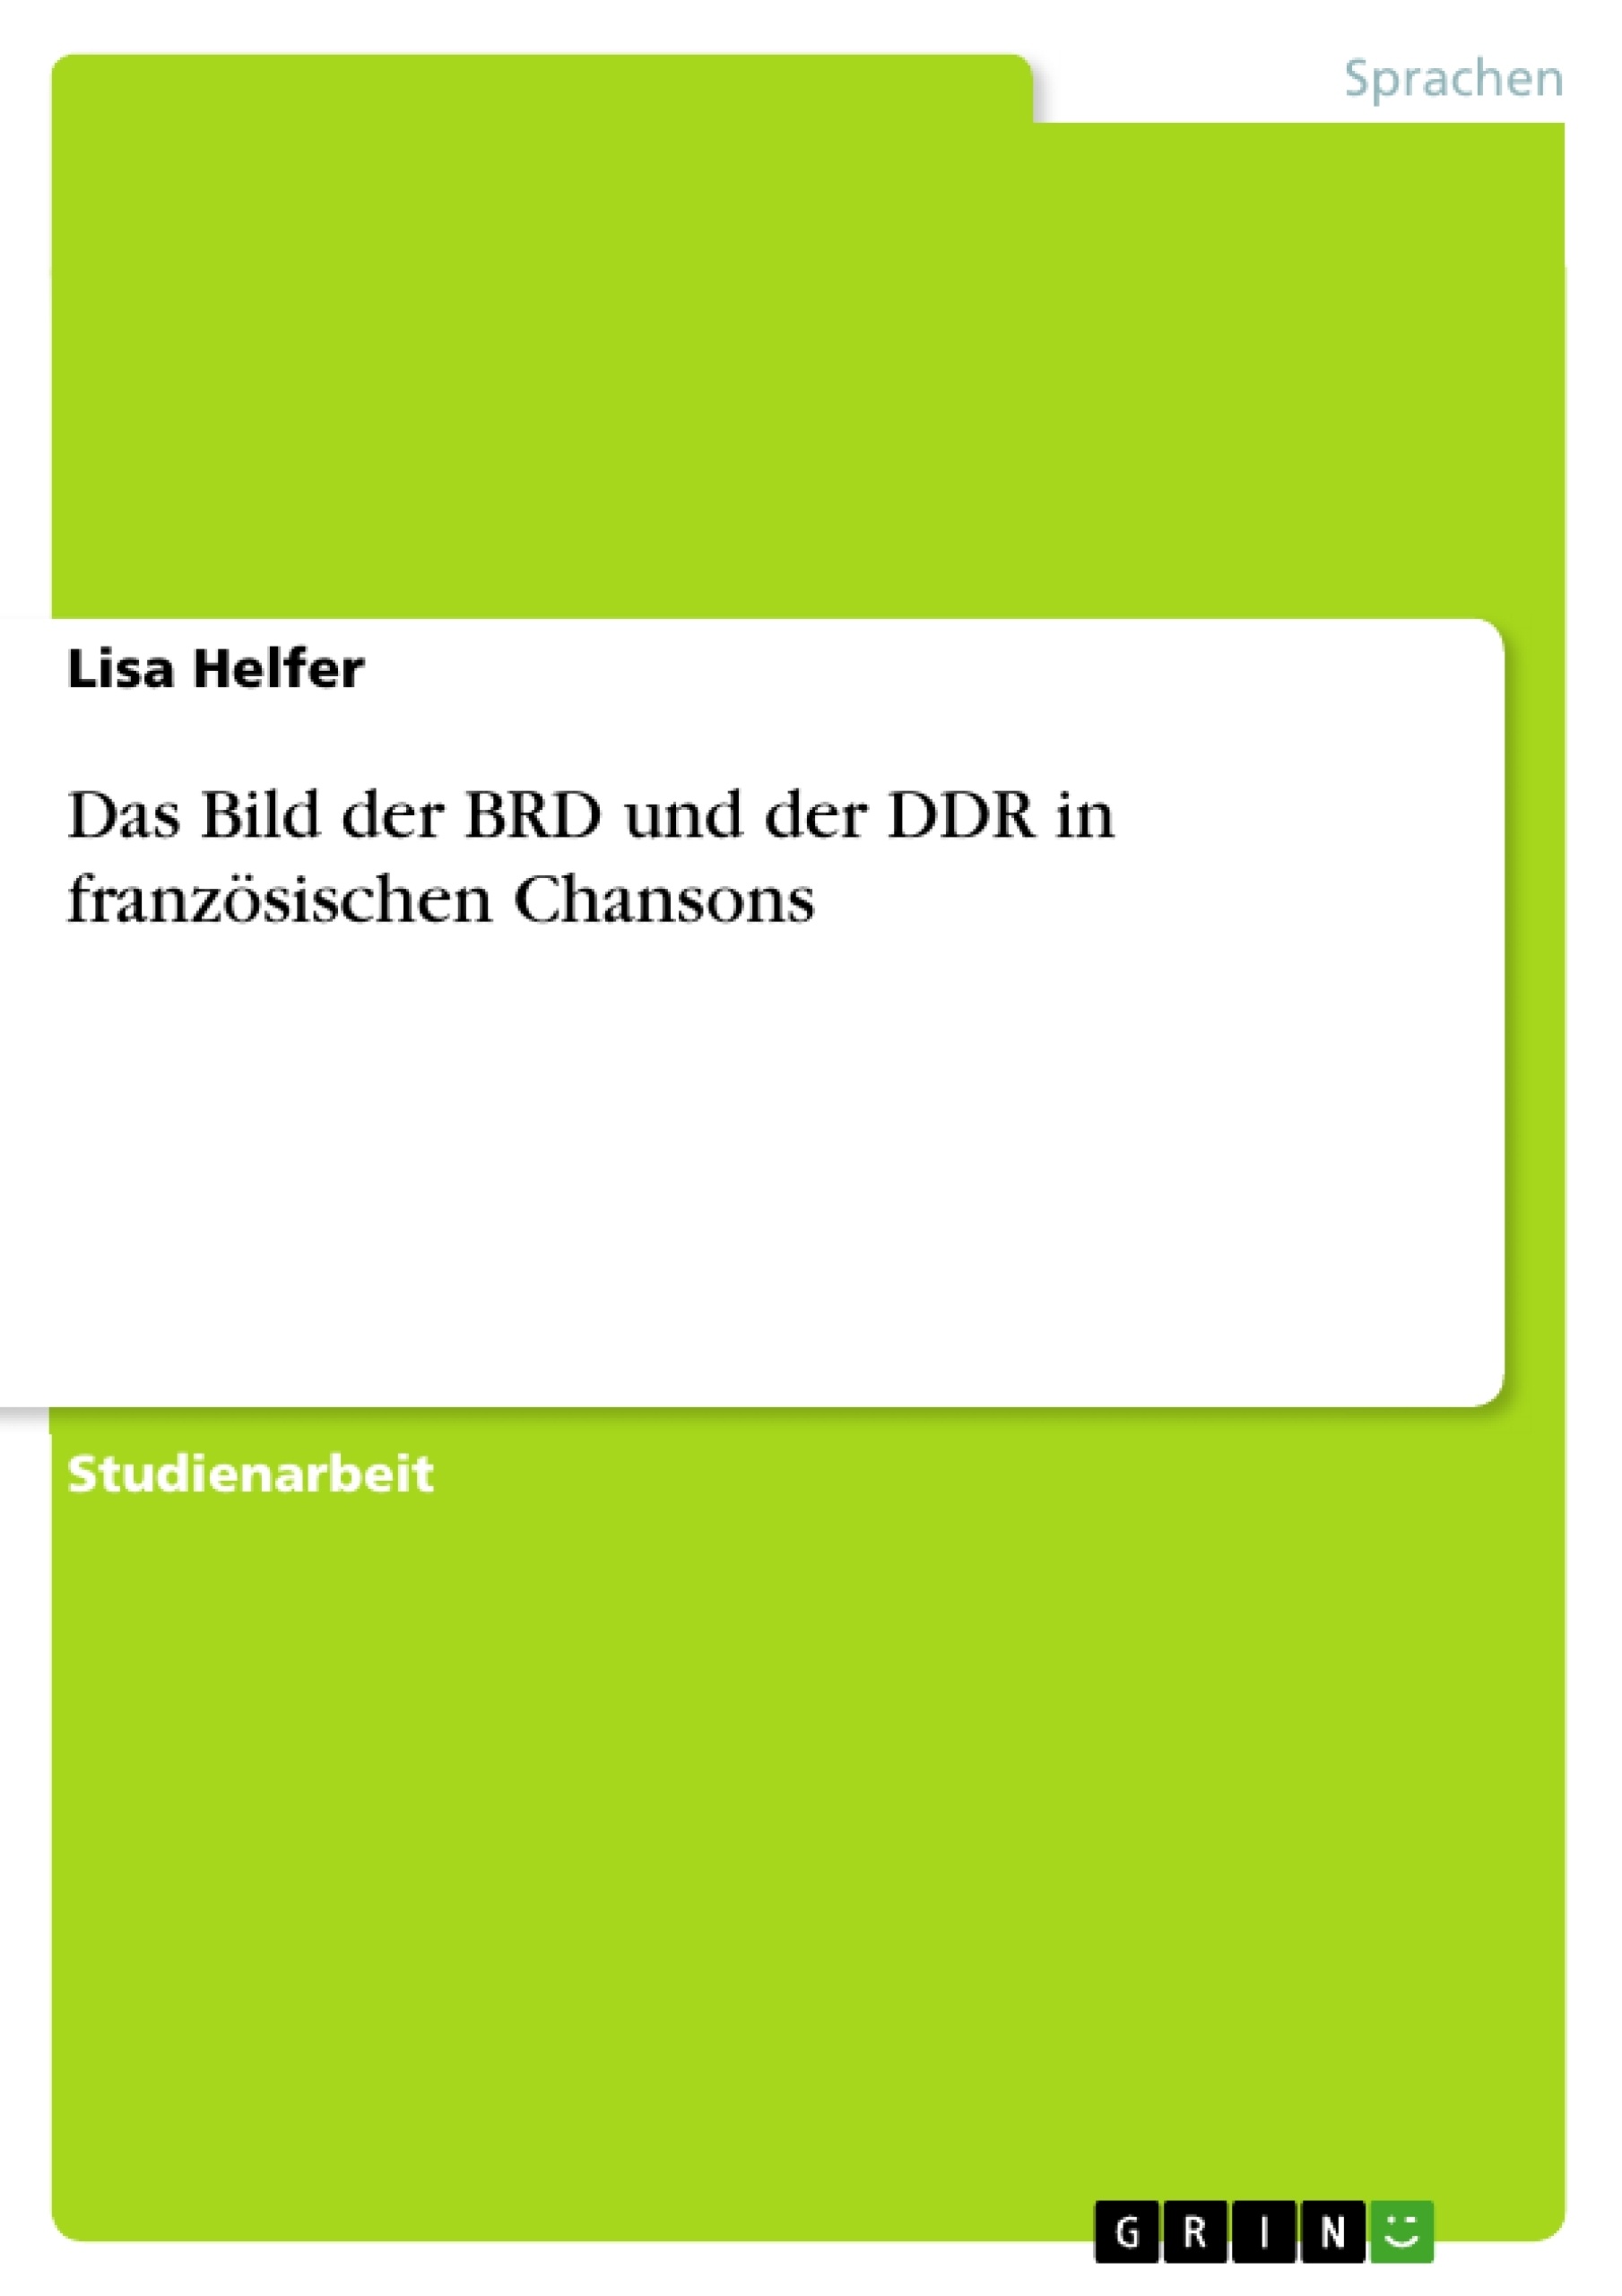 Título: Das Bild der BRD und der DDR  in französischen Chansons